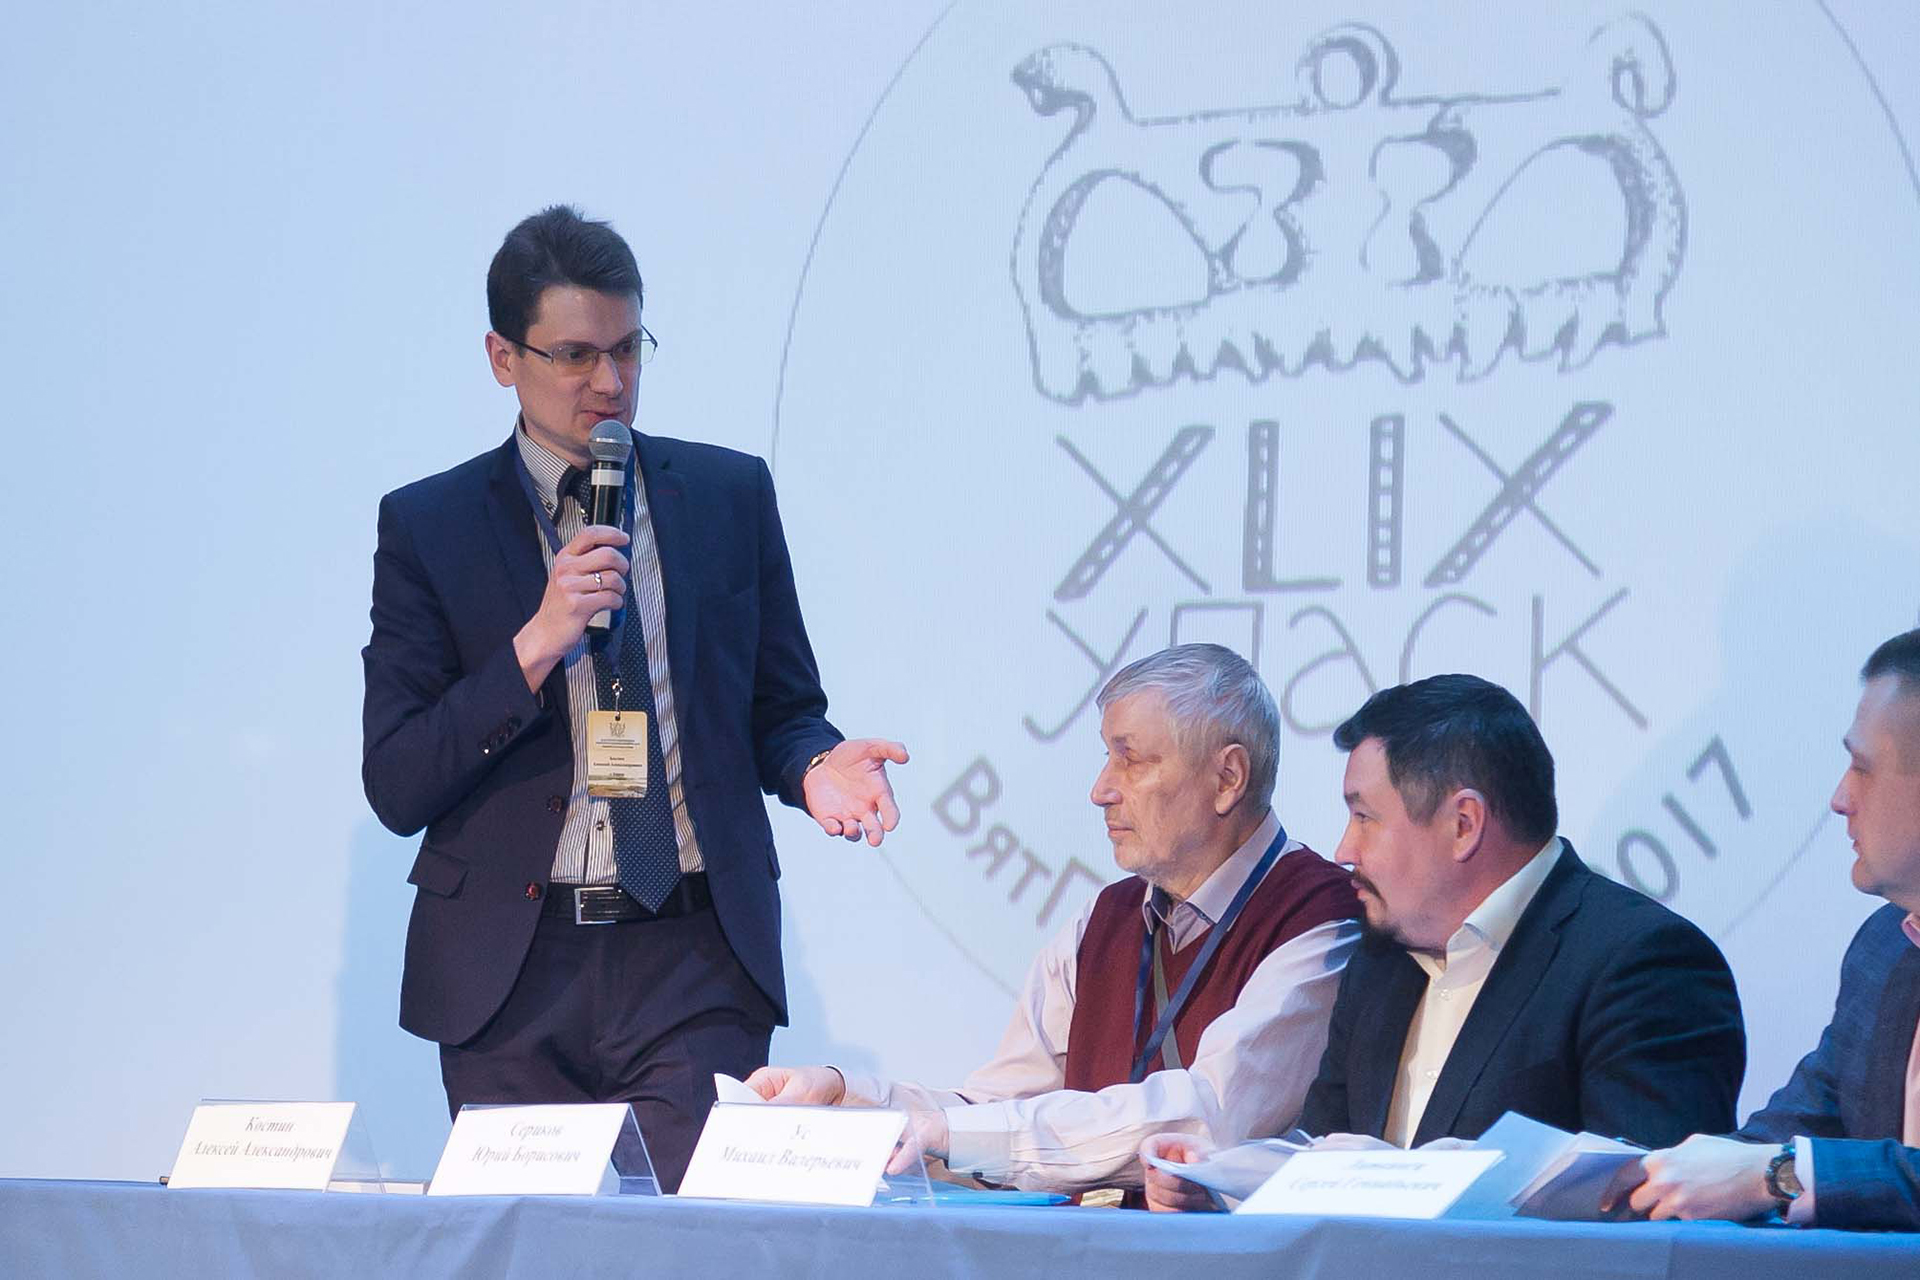 Археологическая всероссийская конференция 